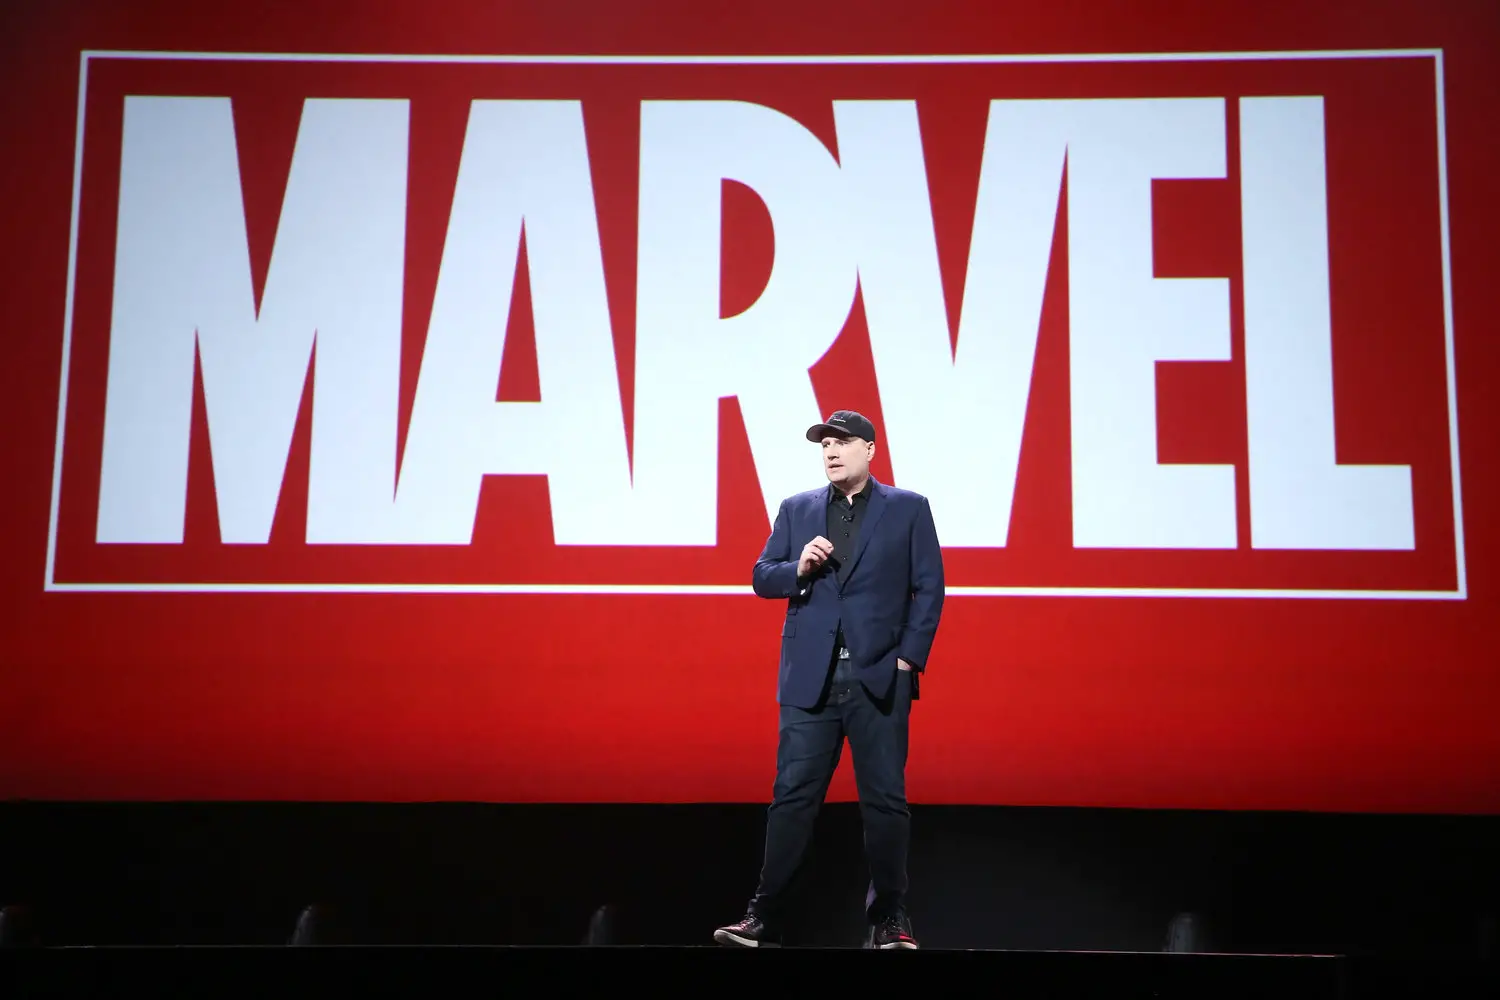 Kevin Feige MarvelBlog News for September 6th